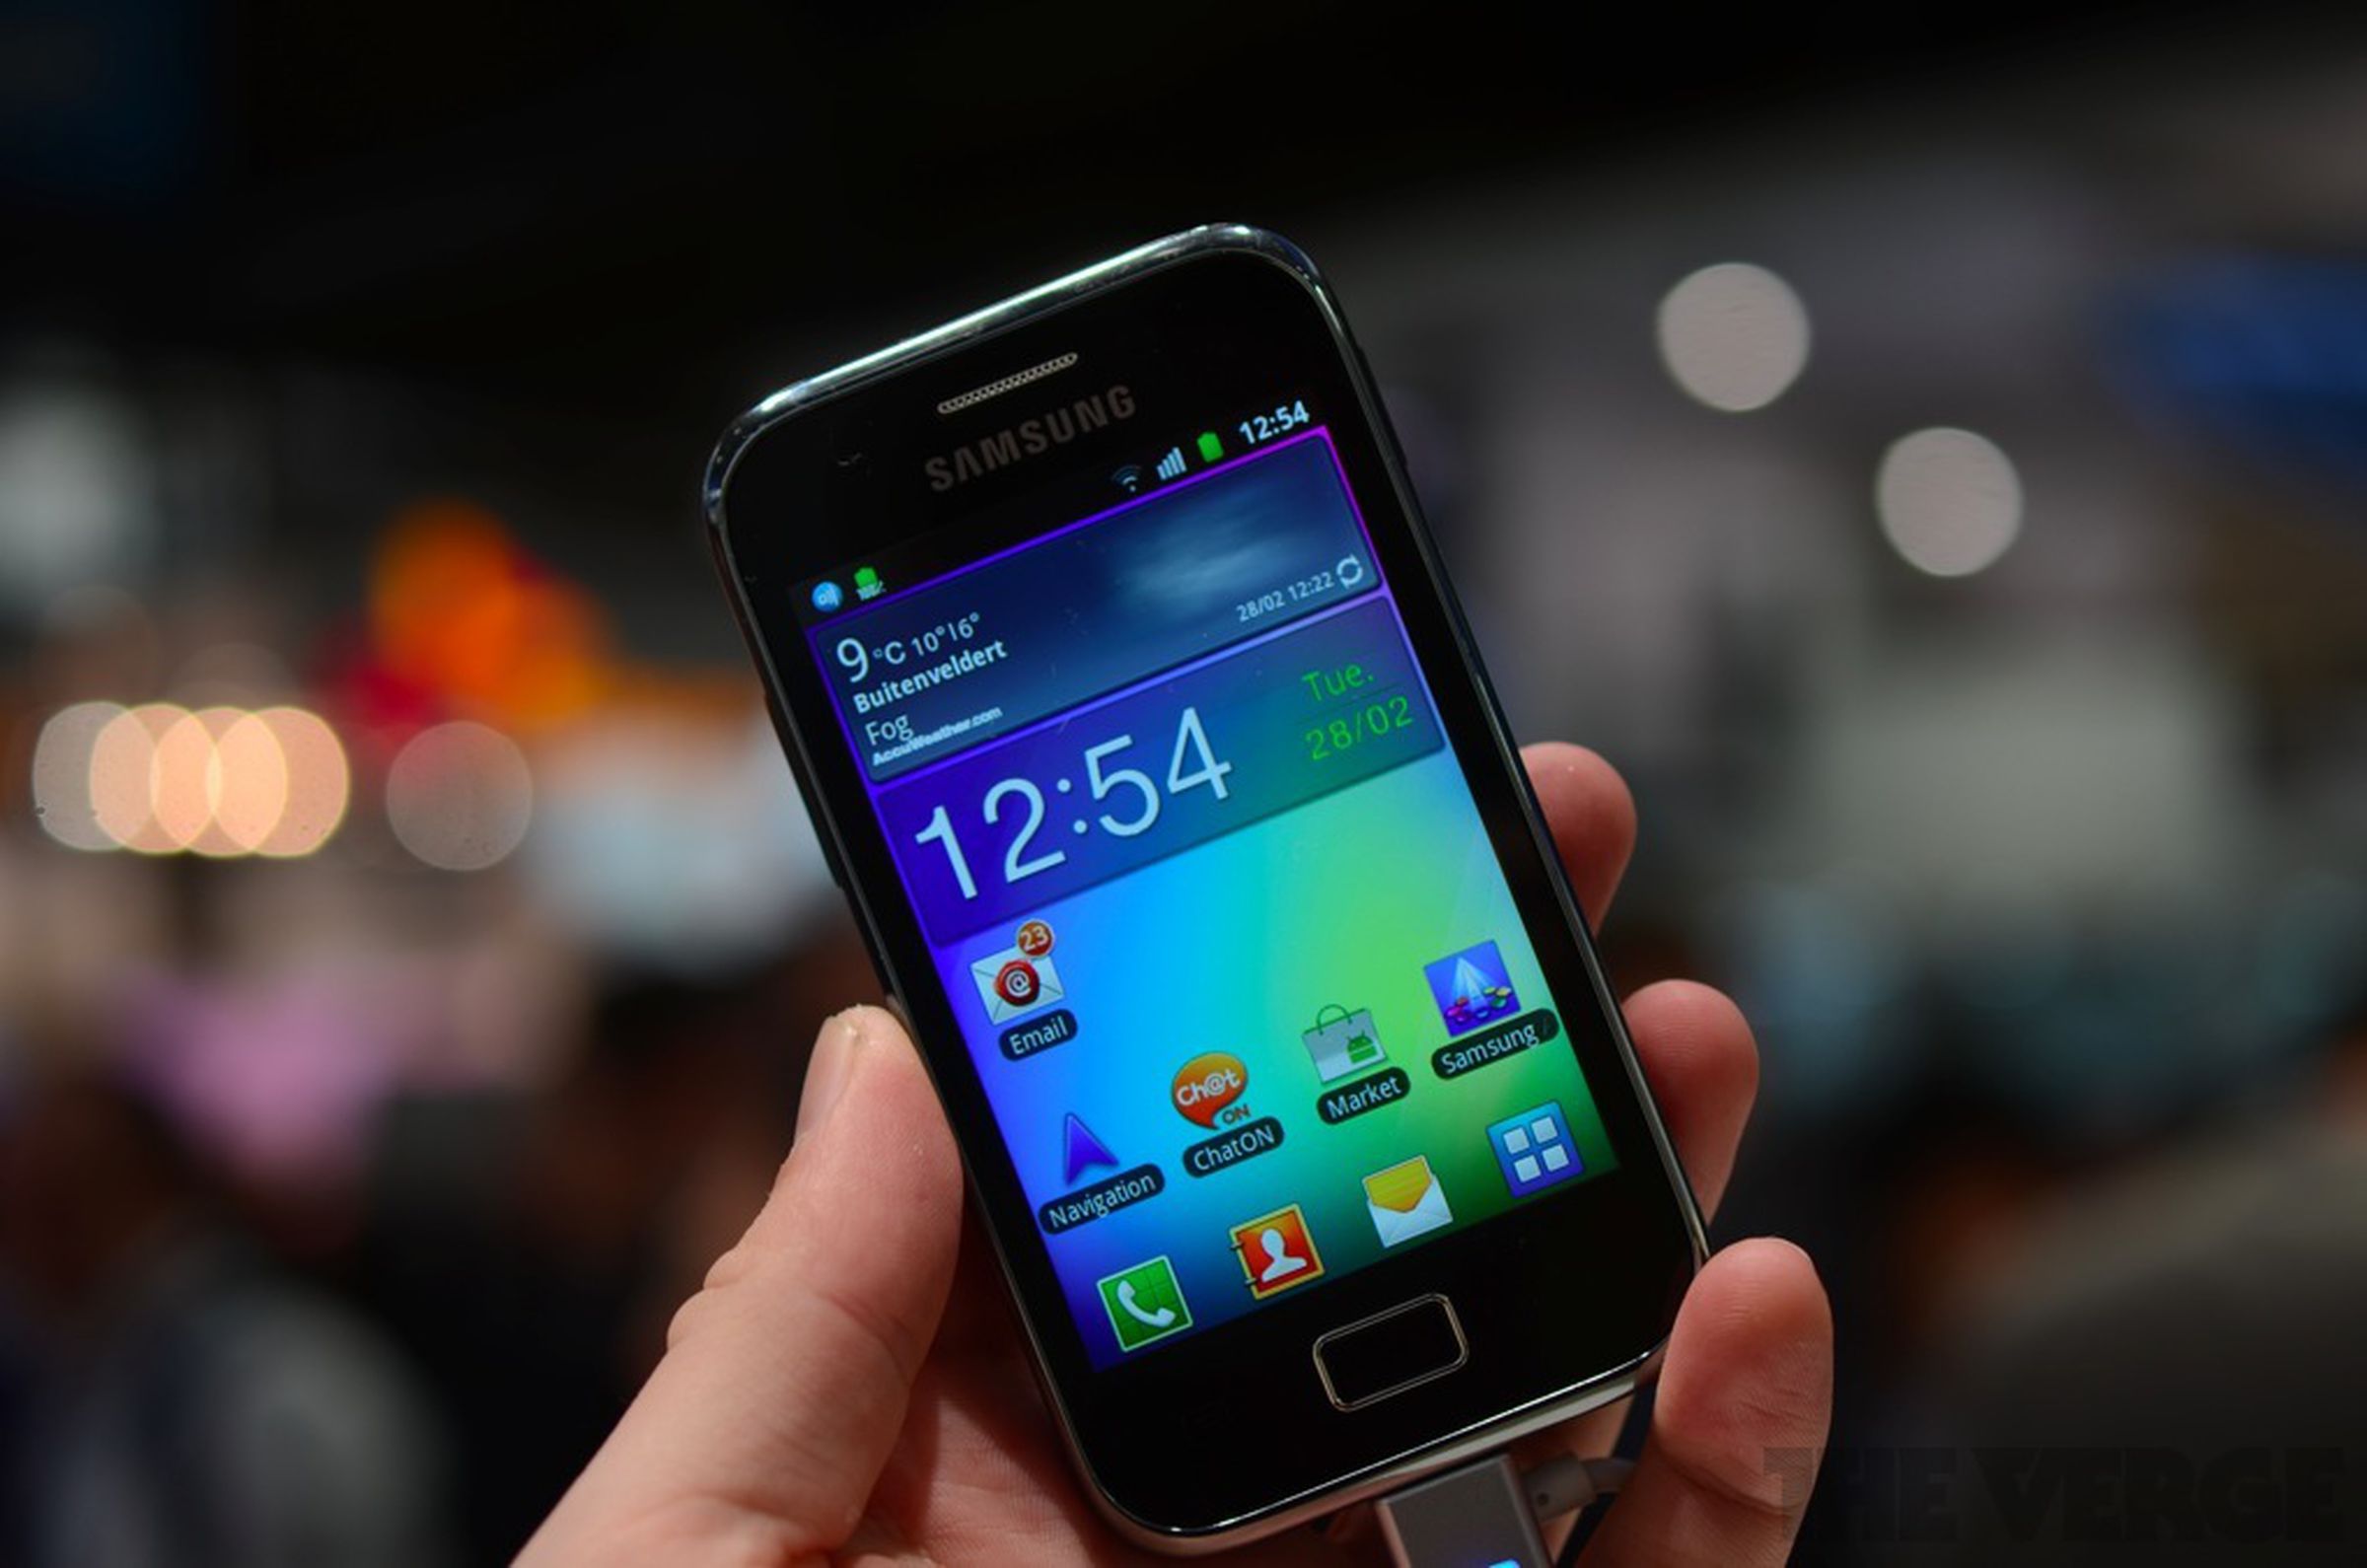 Samsung Galaxy Ace 2, Galaxy Ace Plus, Galaxy Mini 2 hands-on